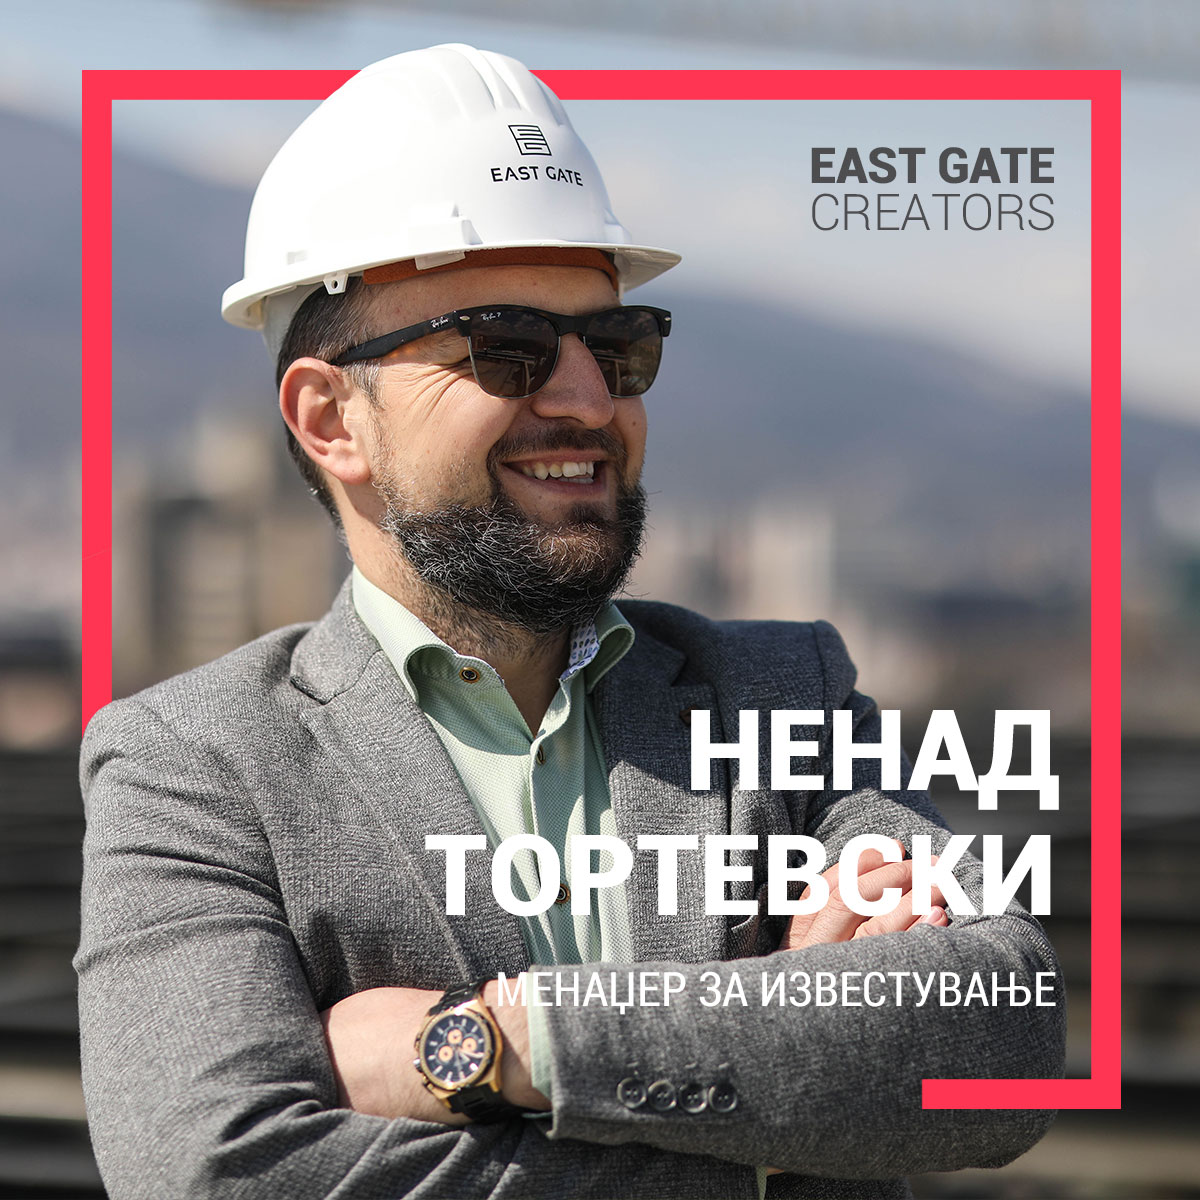 East Gate Creators – Ненад Тортевски